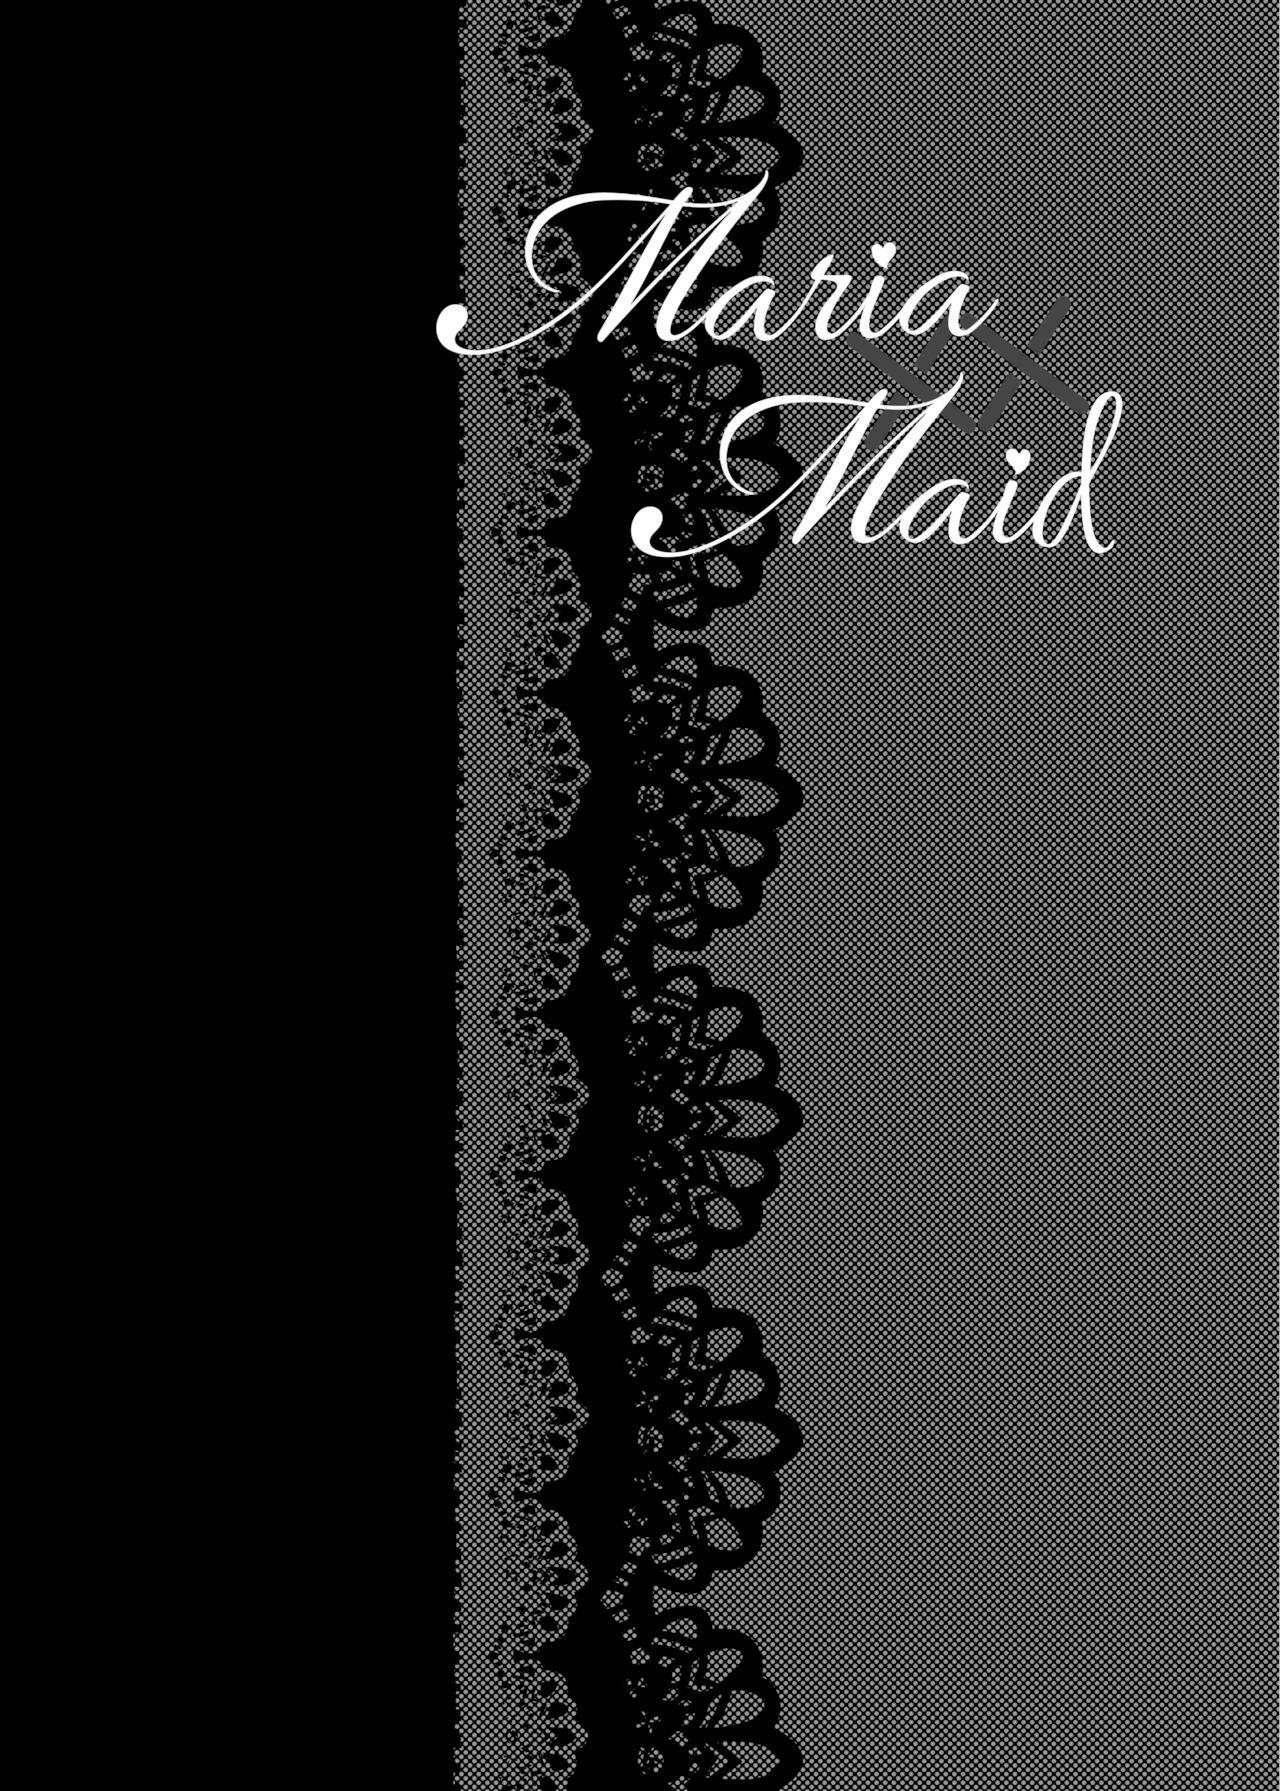 Maria xx Maid 2